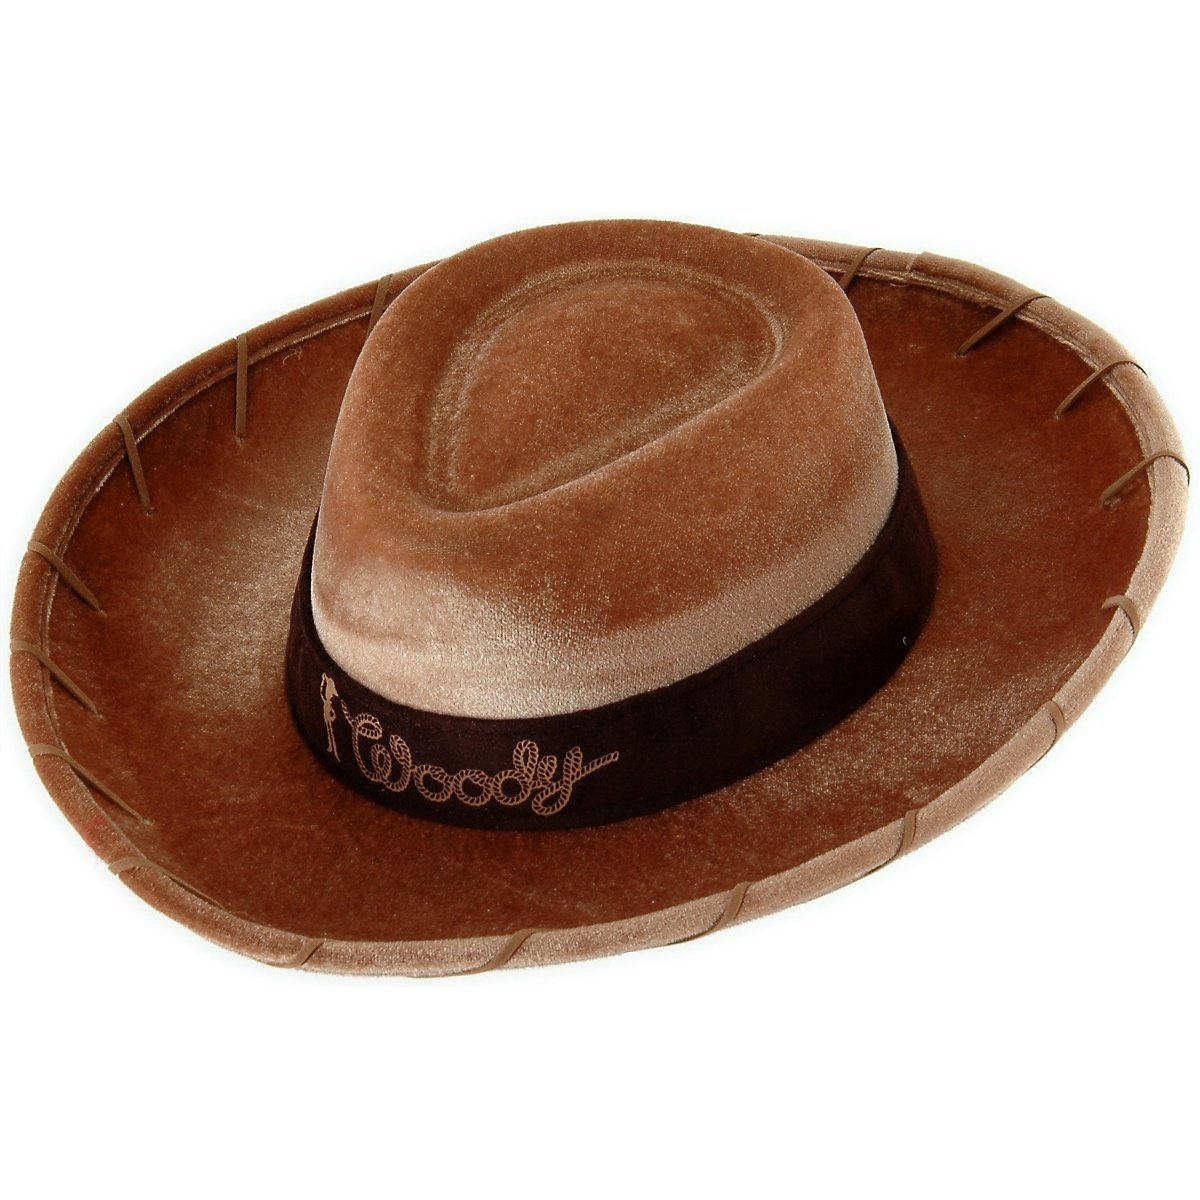 woodys hat flick